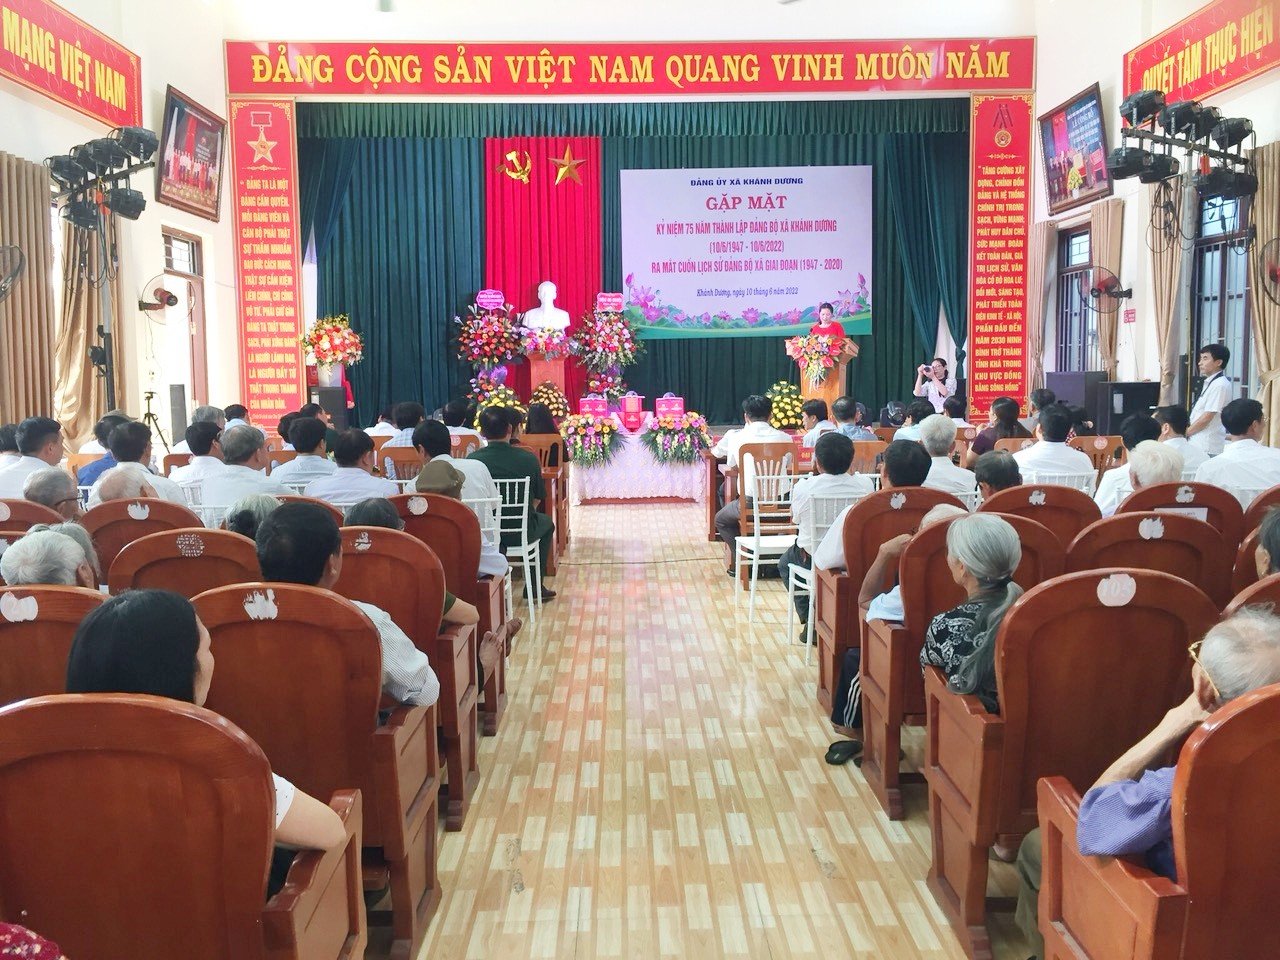 Thường trực Liên minh HTX tỉnh dự kỷ niệm 75 năm thành lập Đảng bộ xã Khánh Dương (1947-2022) và ra mắt cuốn lịch sử Đảng bộ xã giai đoạn (1947-2020)